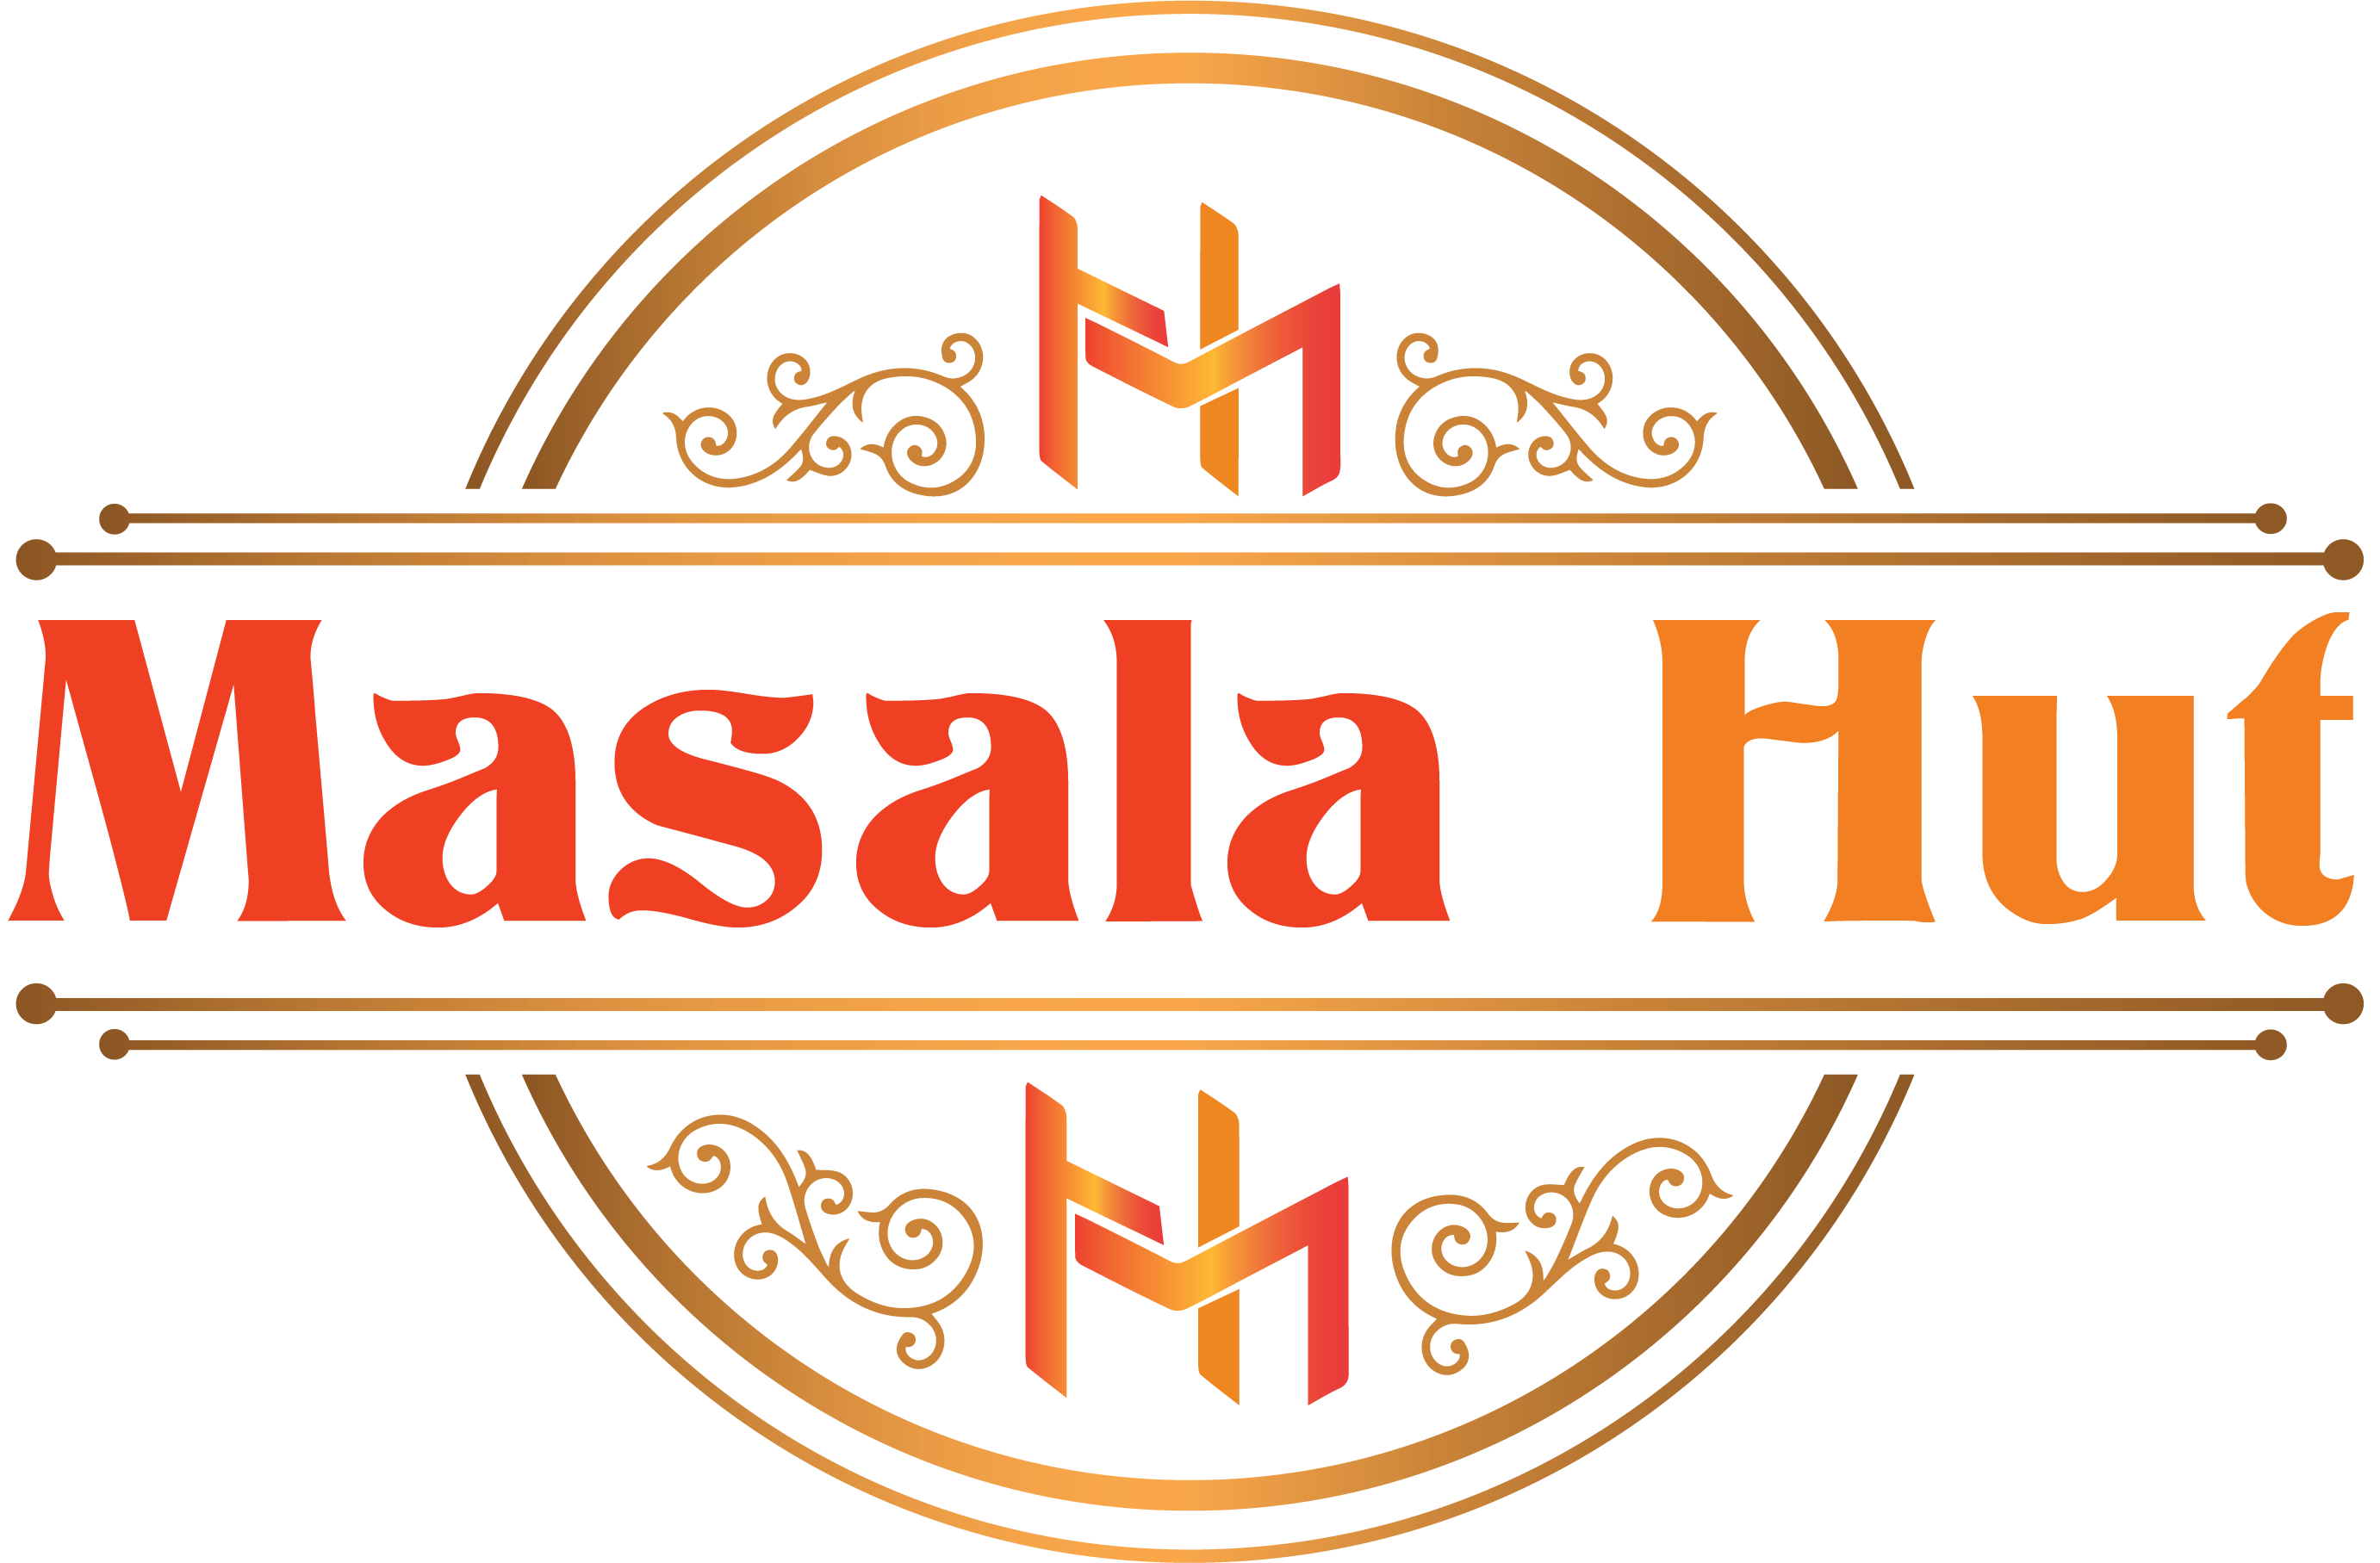 Masala hut logo